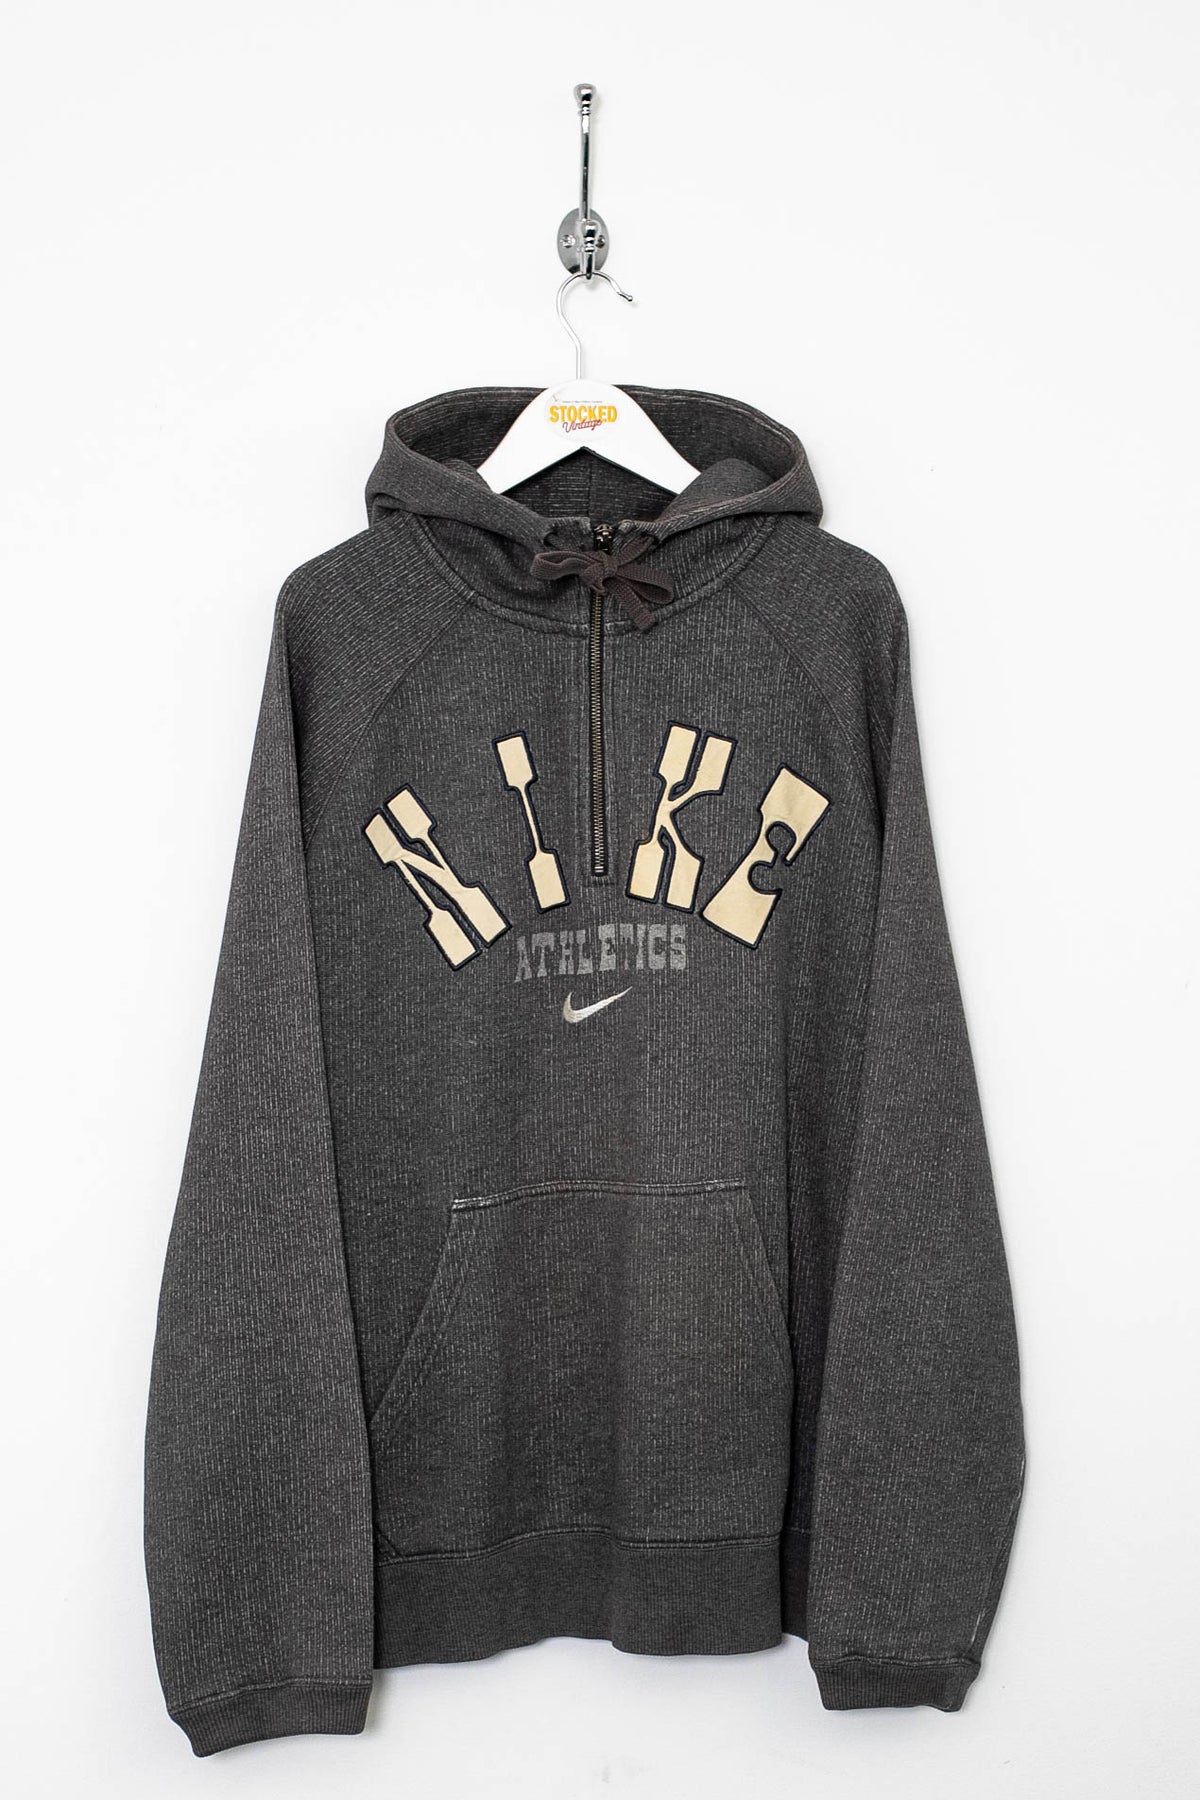 00s Nike 1/4 Zip Hoodie (XL)